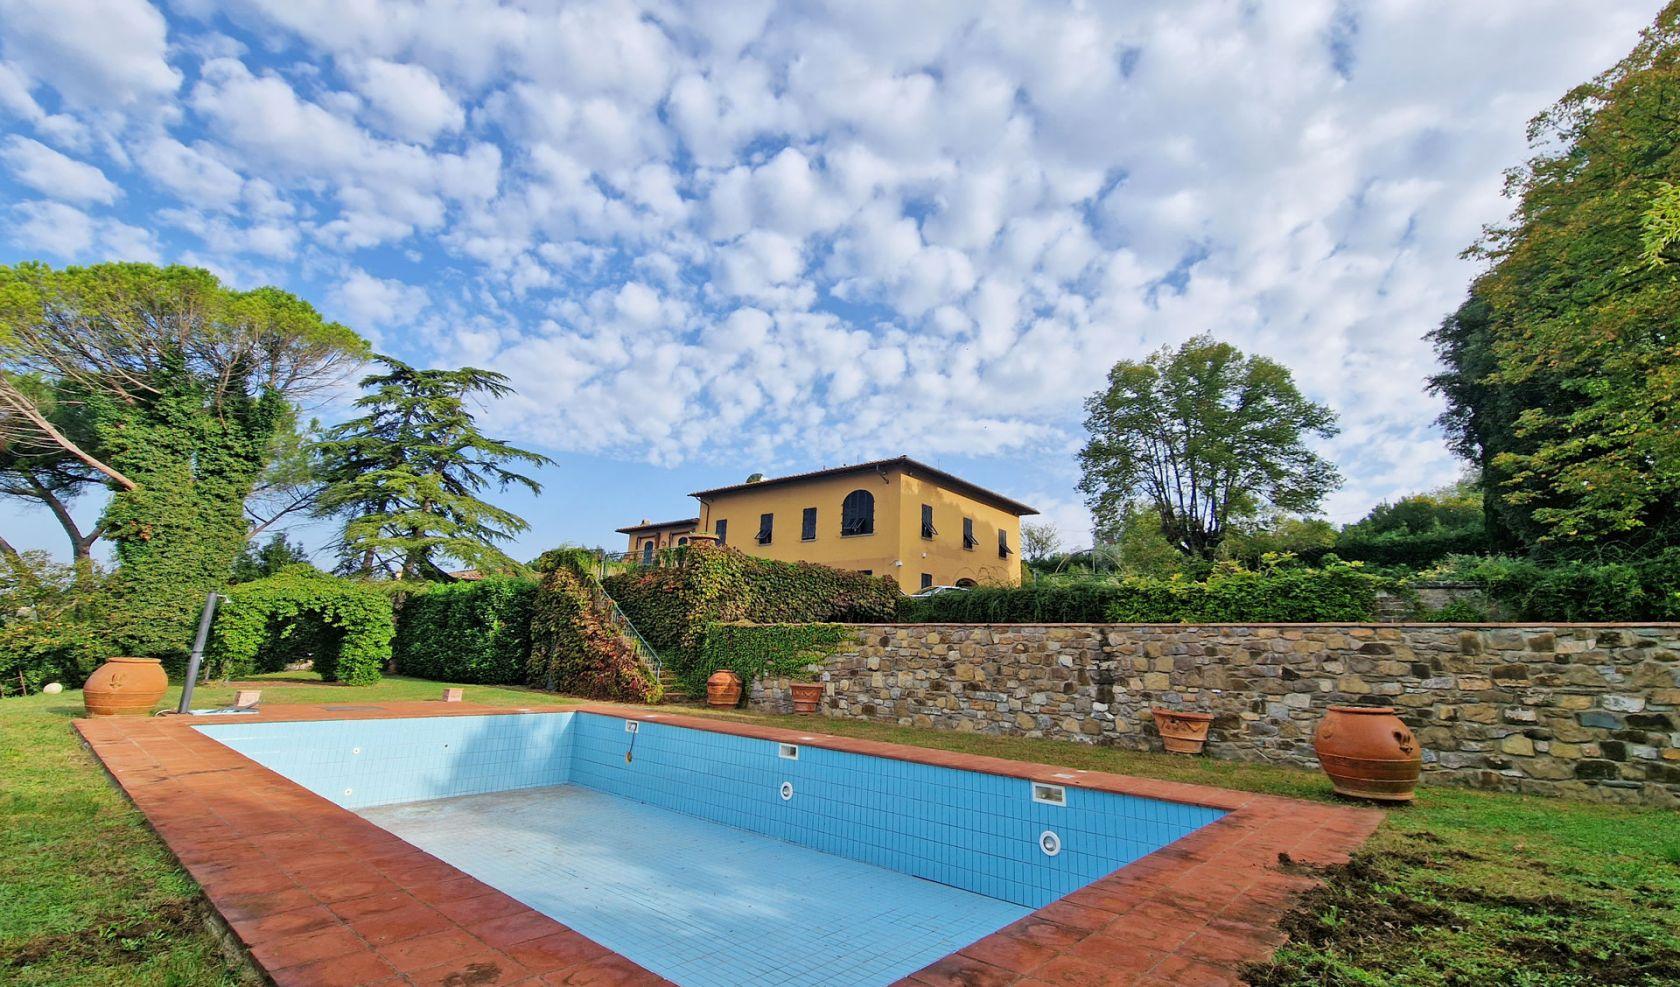 Toscana Immobiliare - Vicino a Firenze, nella verdeggiante campagna dell’Impruneta è in vendita questa splendida villa di lusso.